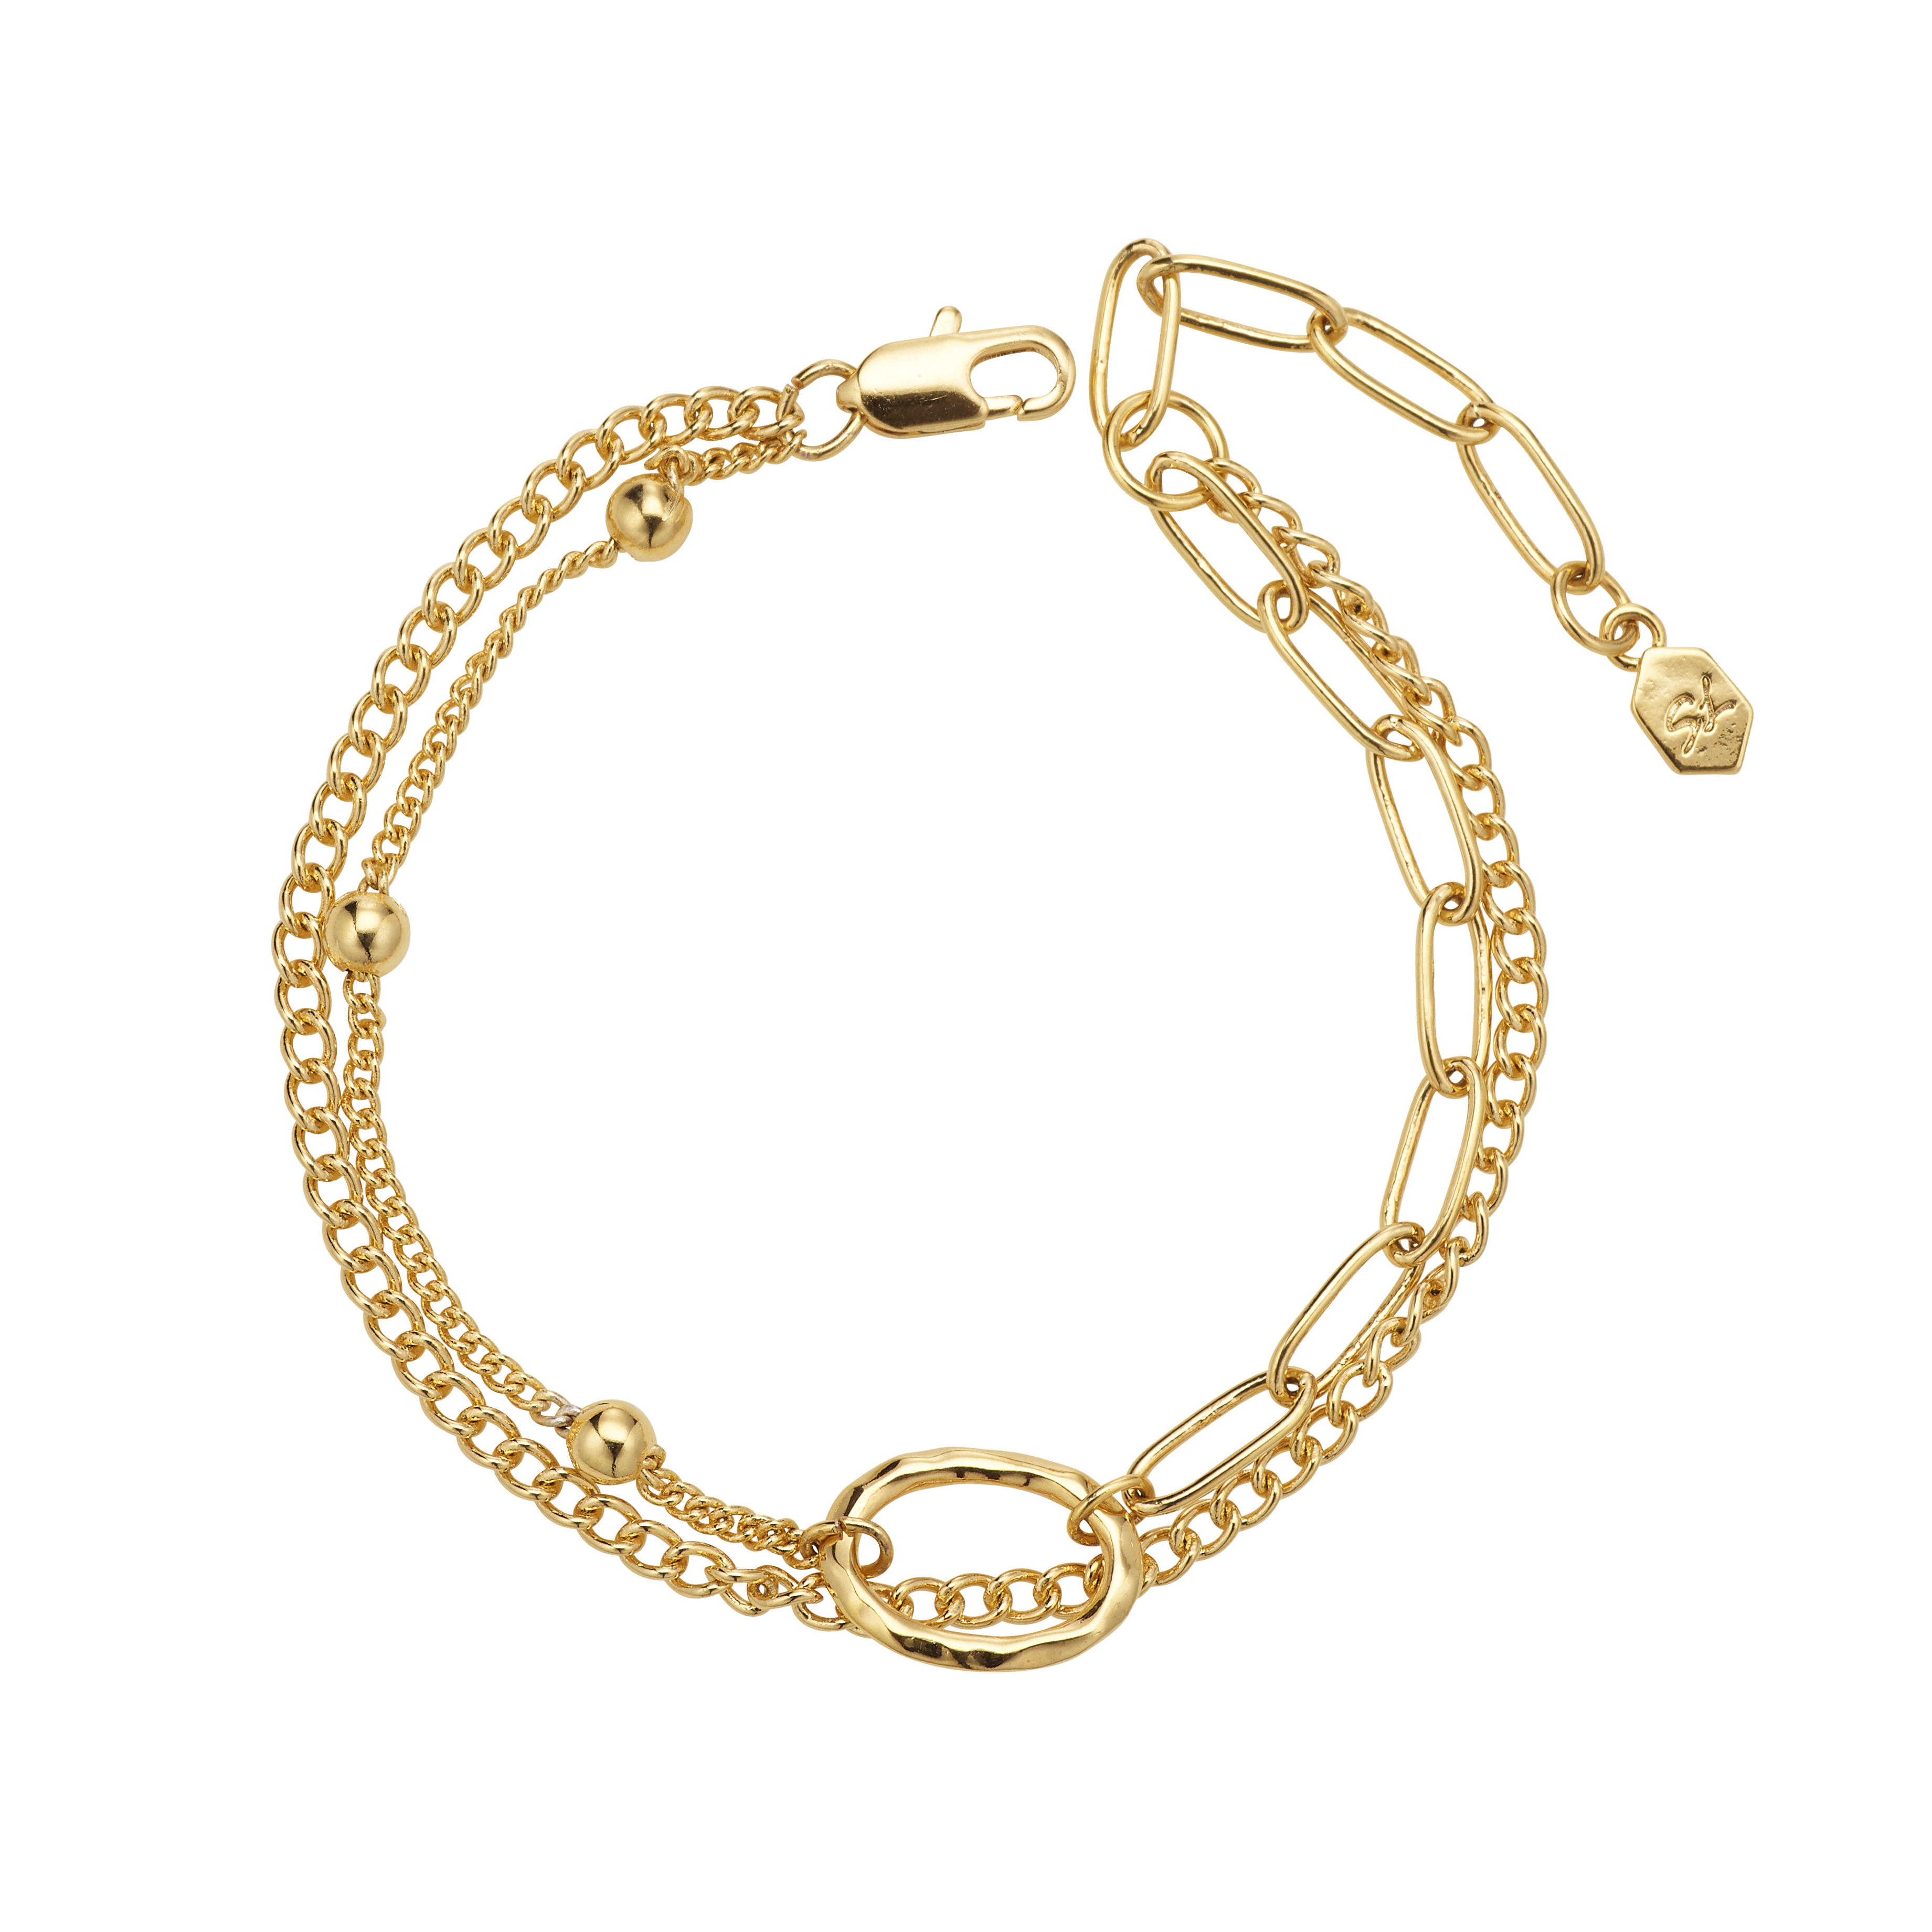 Goldlining Multichain Bracelet [LB0005]